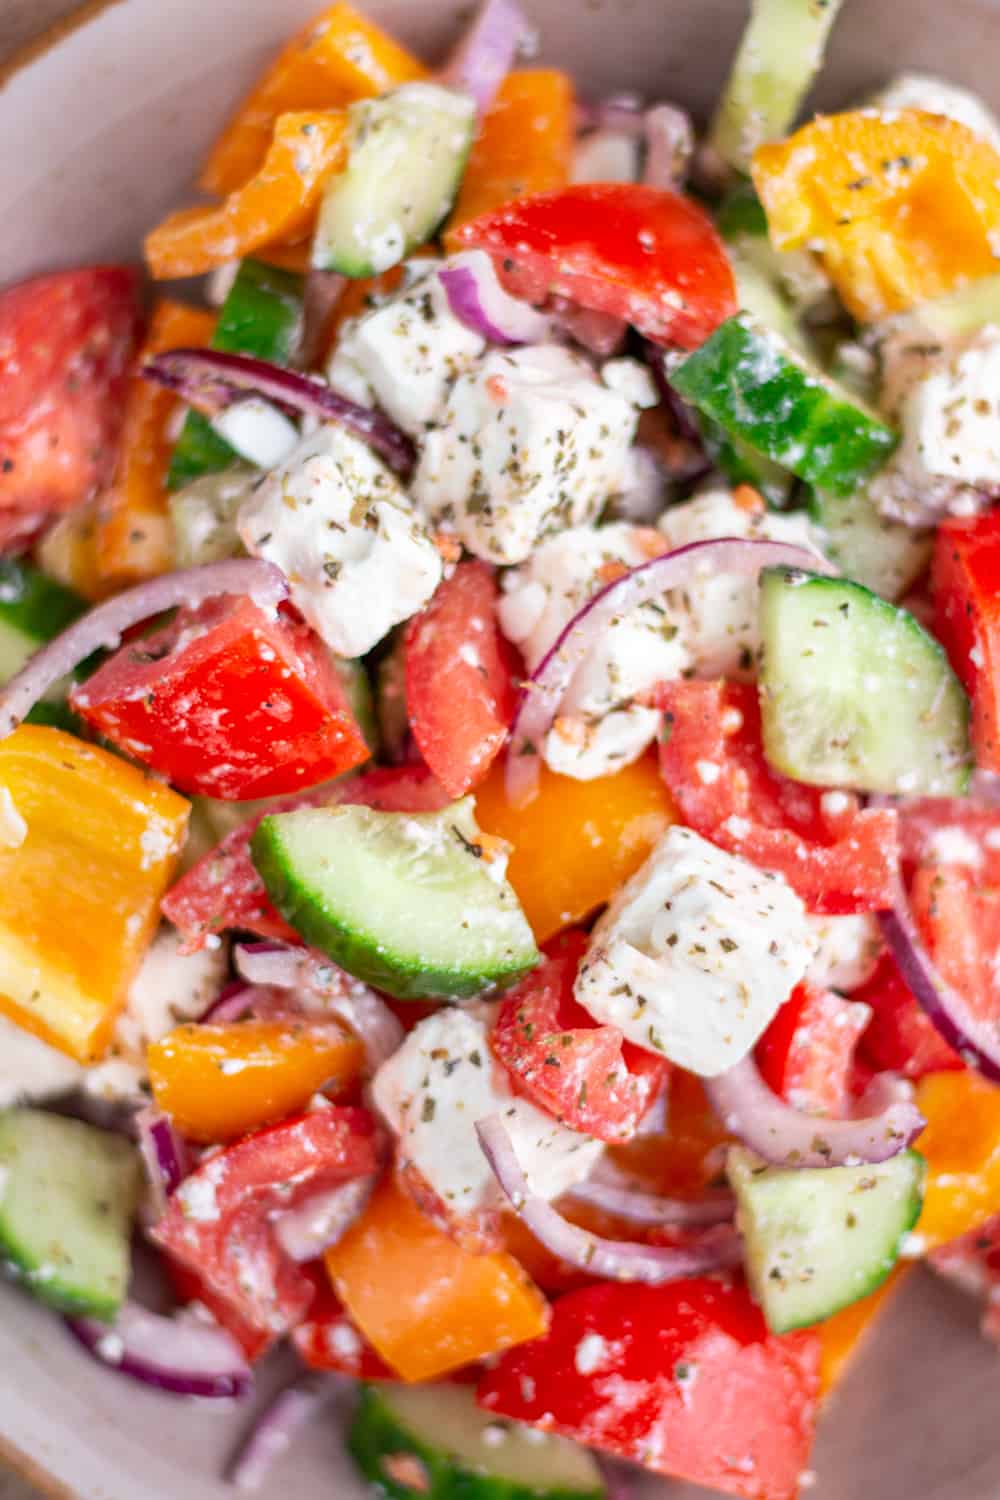 Dieser Salat ist so einfach und schnell gemacht. Denn beim griechischen Bauernsalat wird das Gemüse sowie der Feta nur in grobe Stücke geschnitten und mit einem einfachen Dressing serviert. Das perfekte Beilagen Rezept.